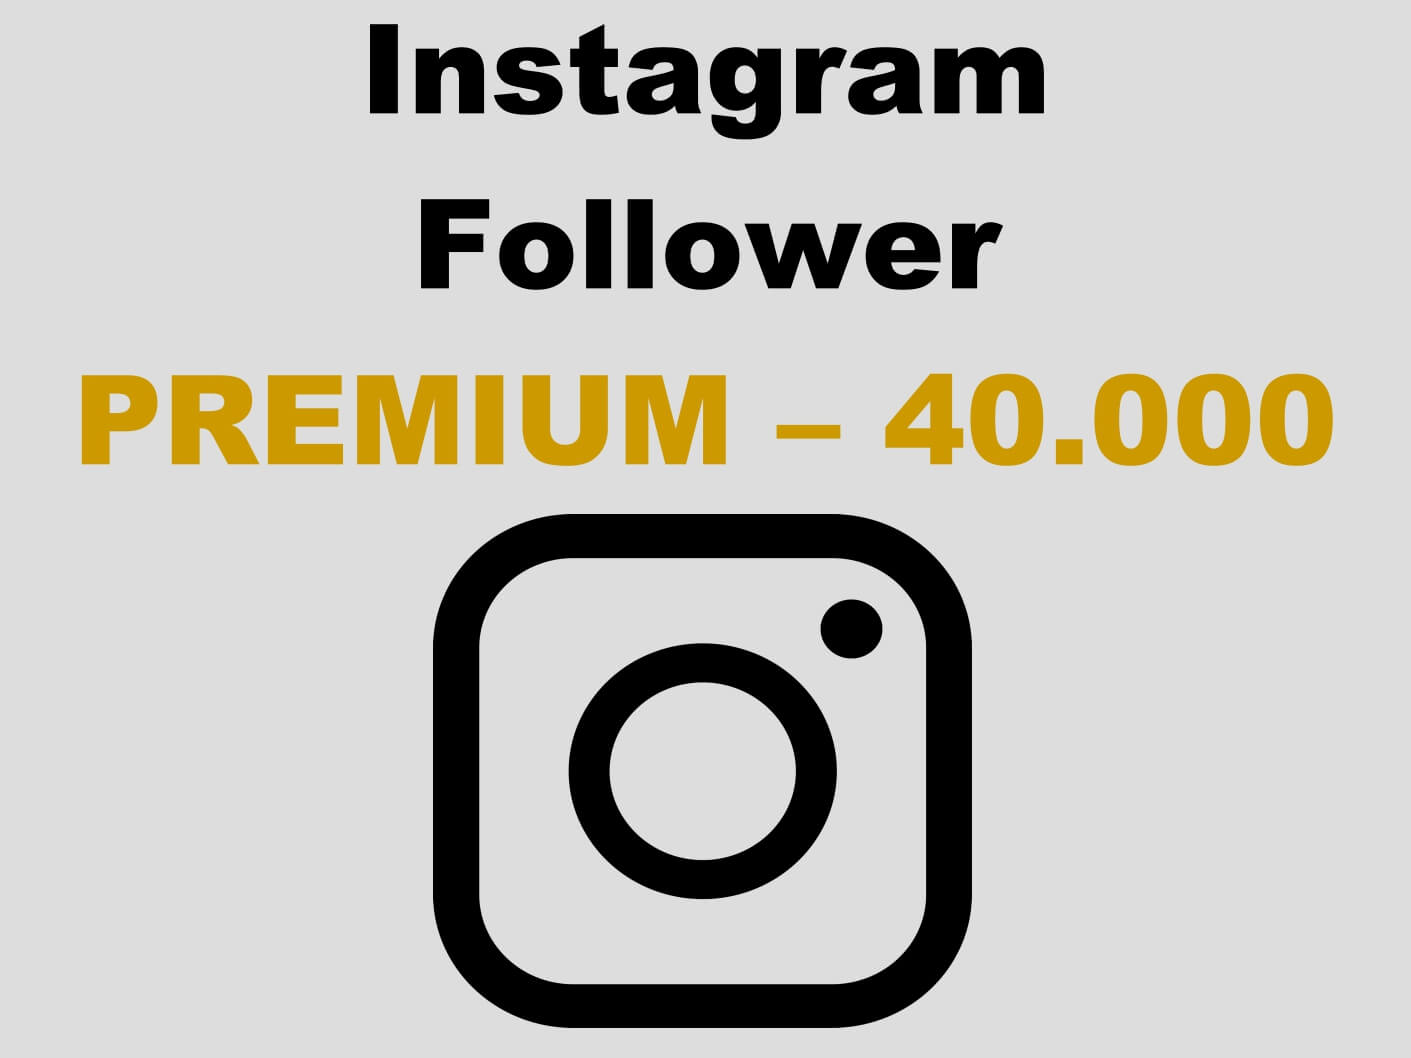 Premium Instagram Follower kaufen 40.000 - Per PayPal und AmEx